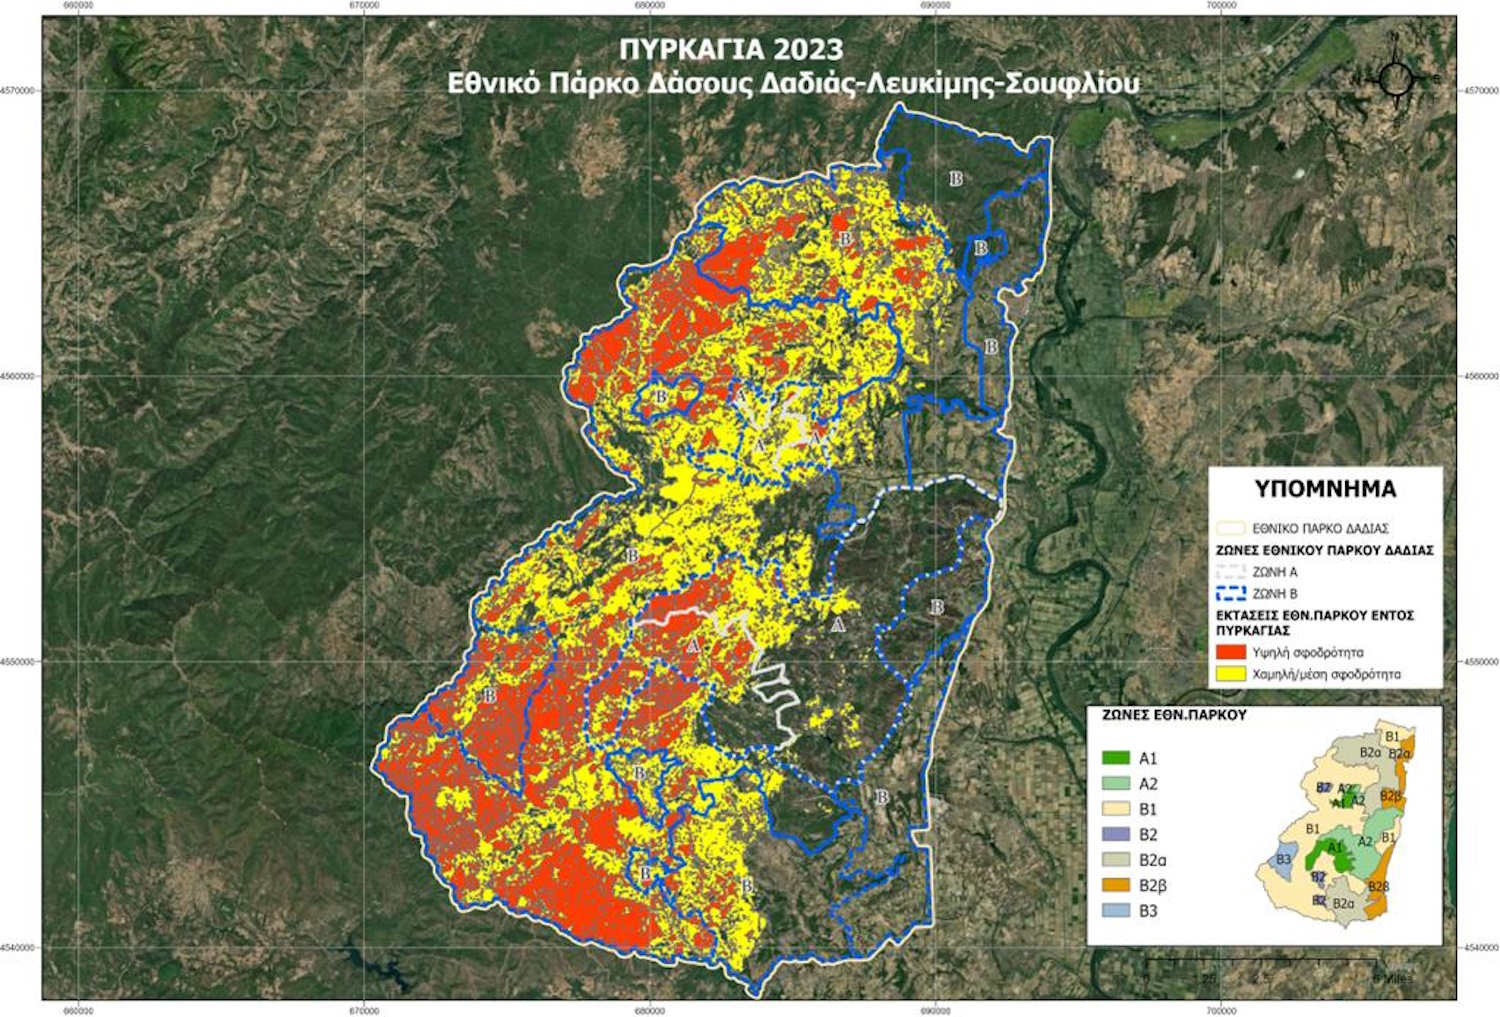 Φωτιά στον Έβρο: Πάνω από 245.000 στρέμματα κάηκαν στο Εθνικό Πάρκο Δάσους Δαδιάς